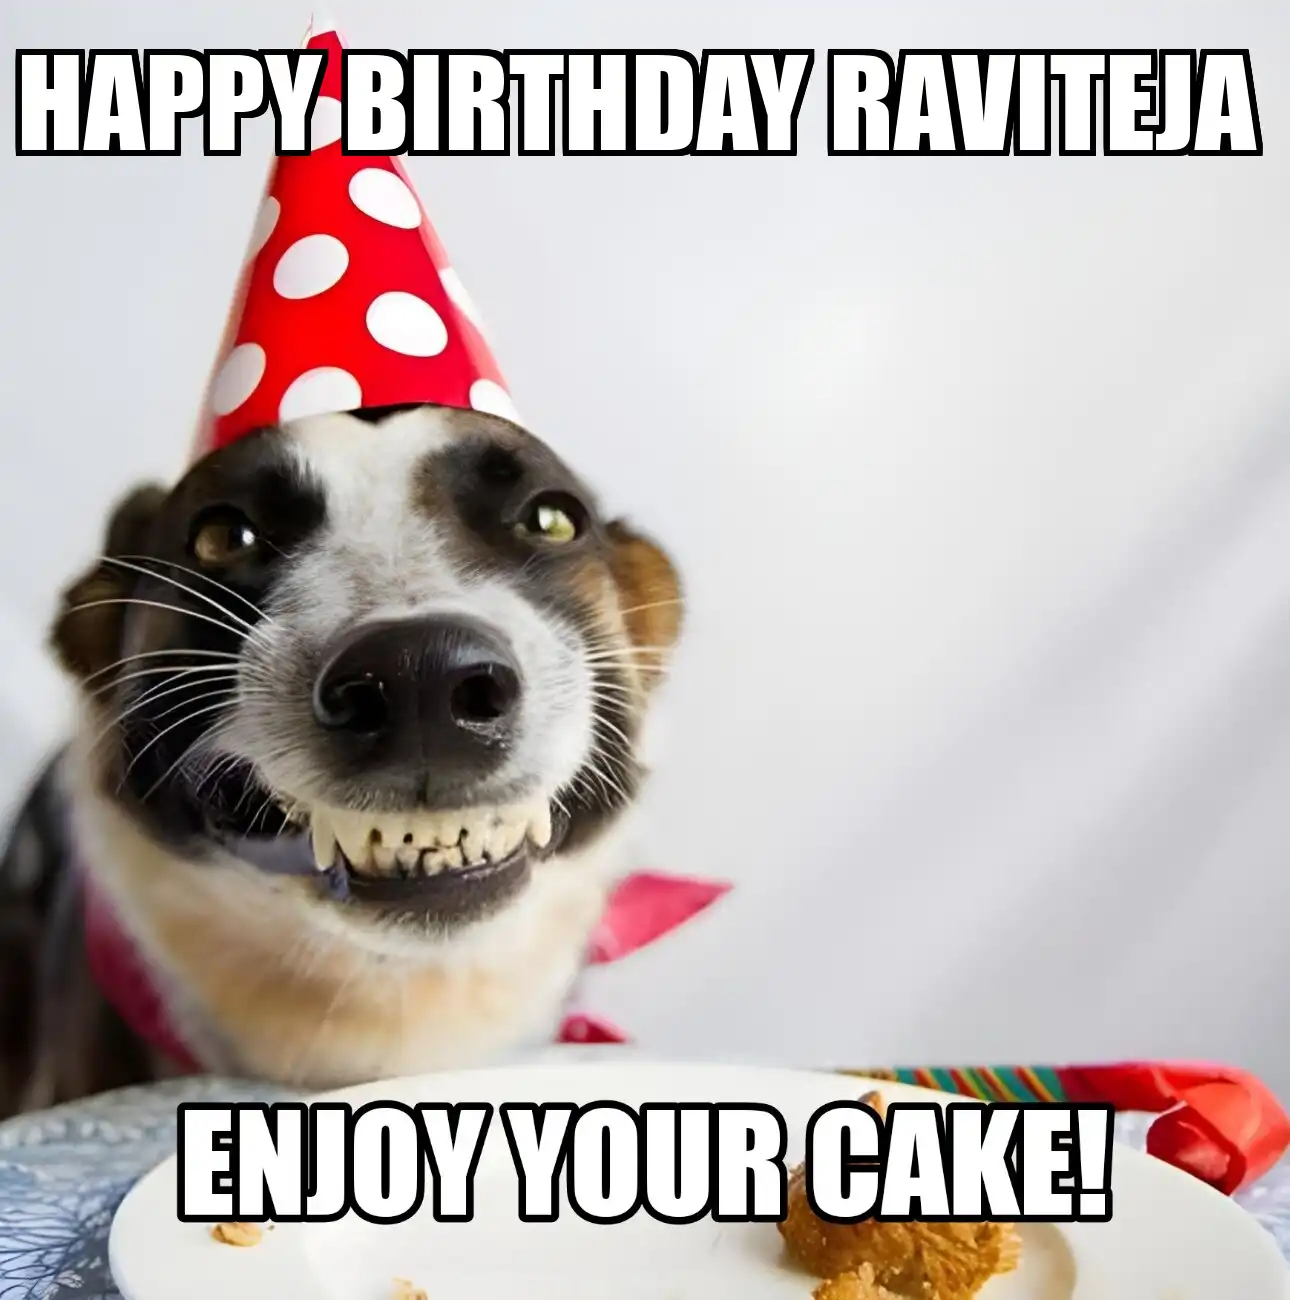 Happy Birthday Raviteja Enjoy Your Cake Dog Meme